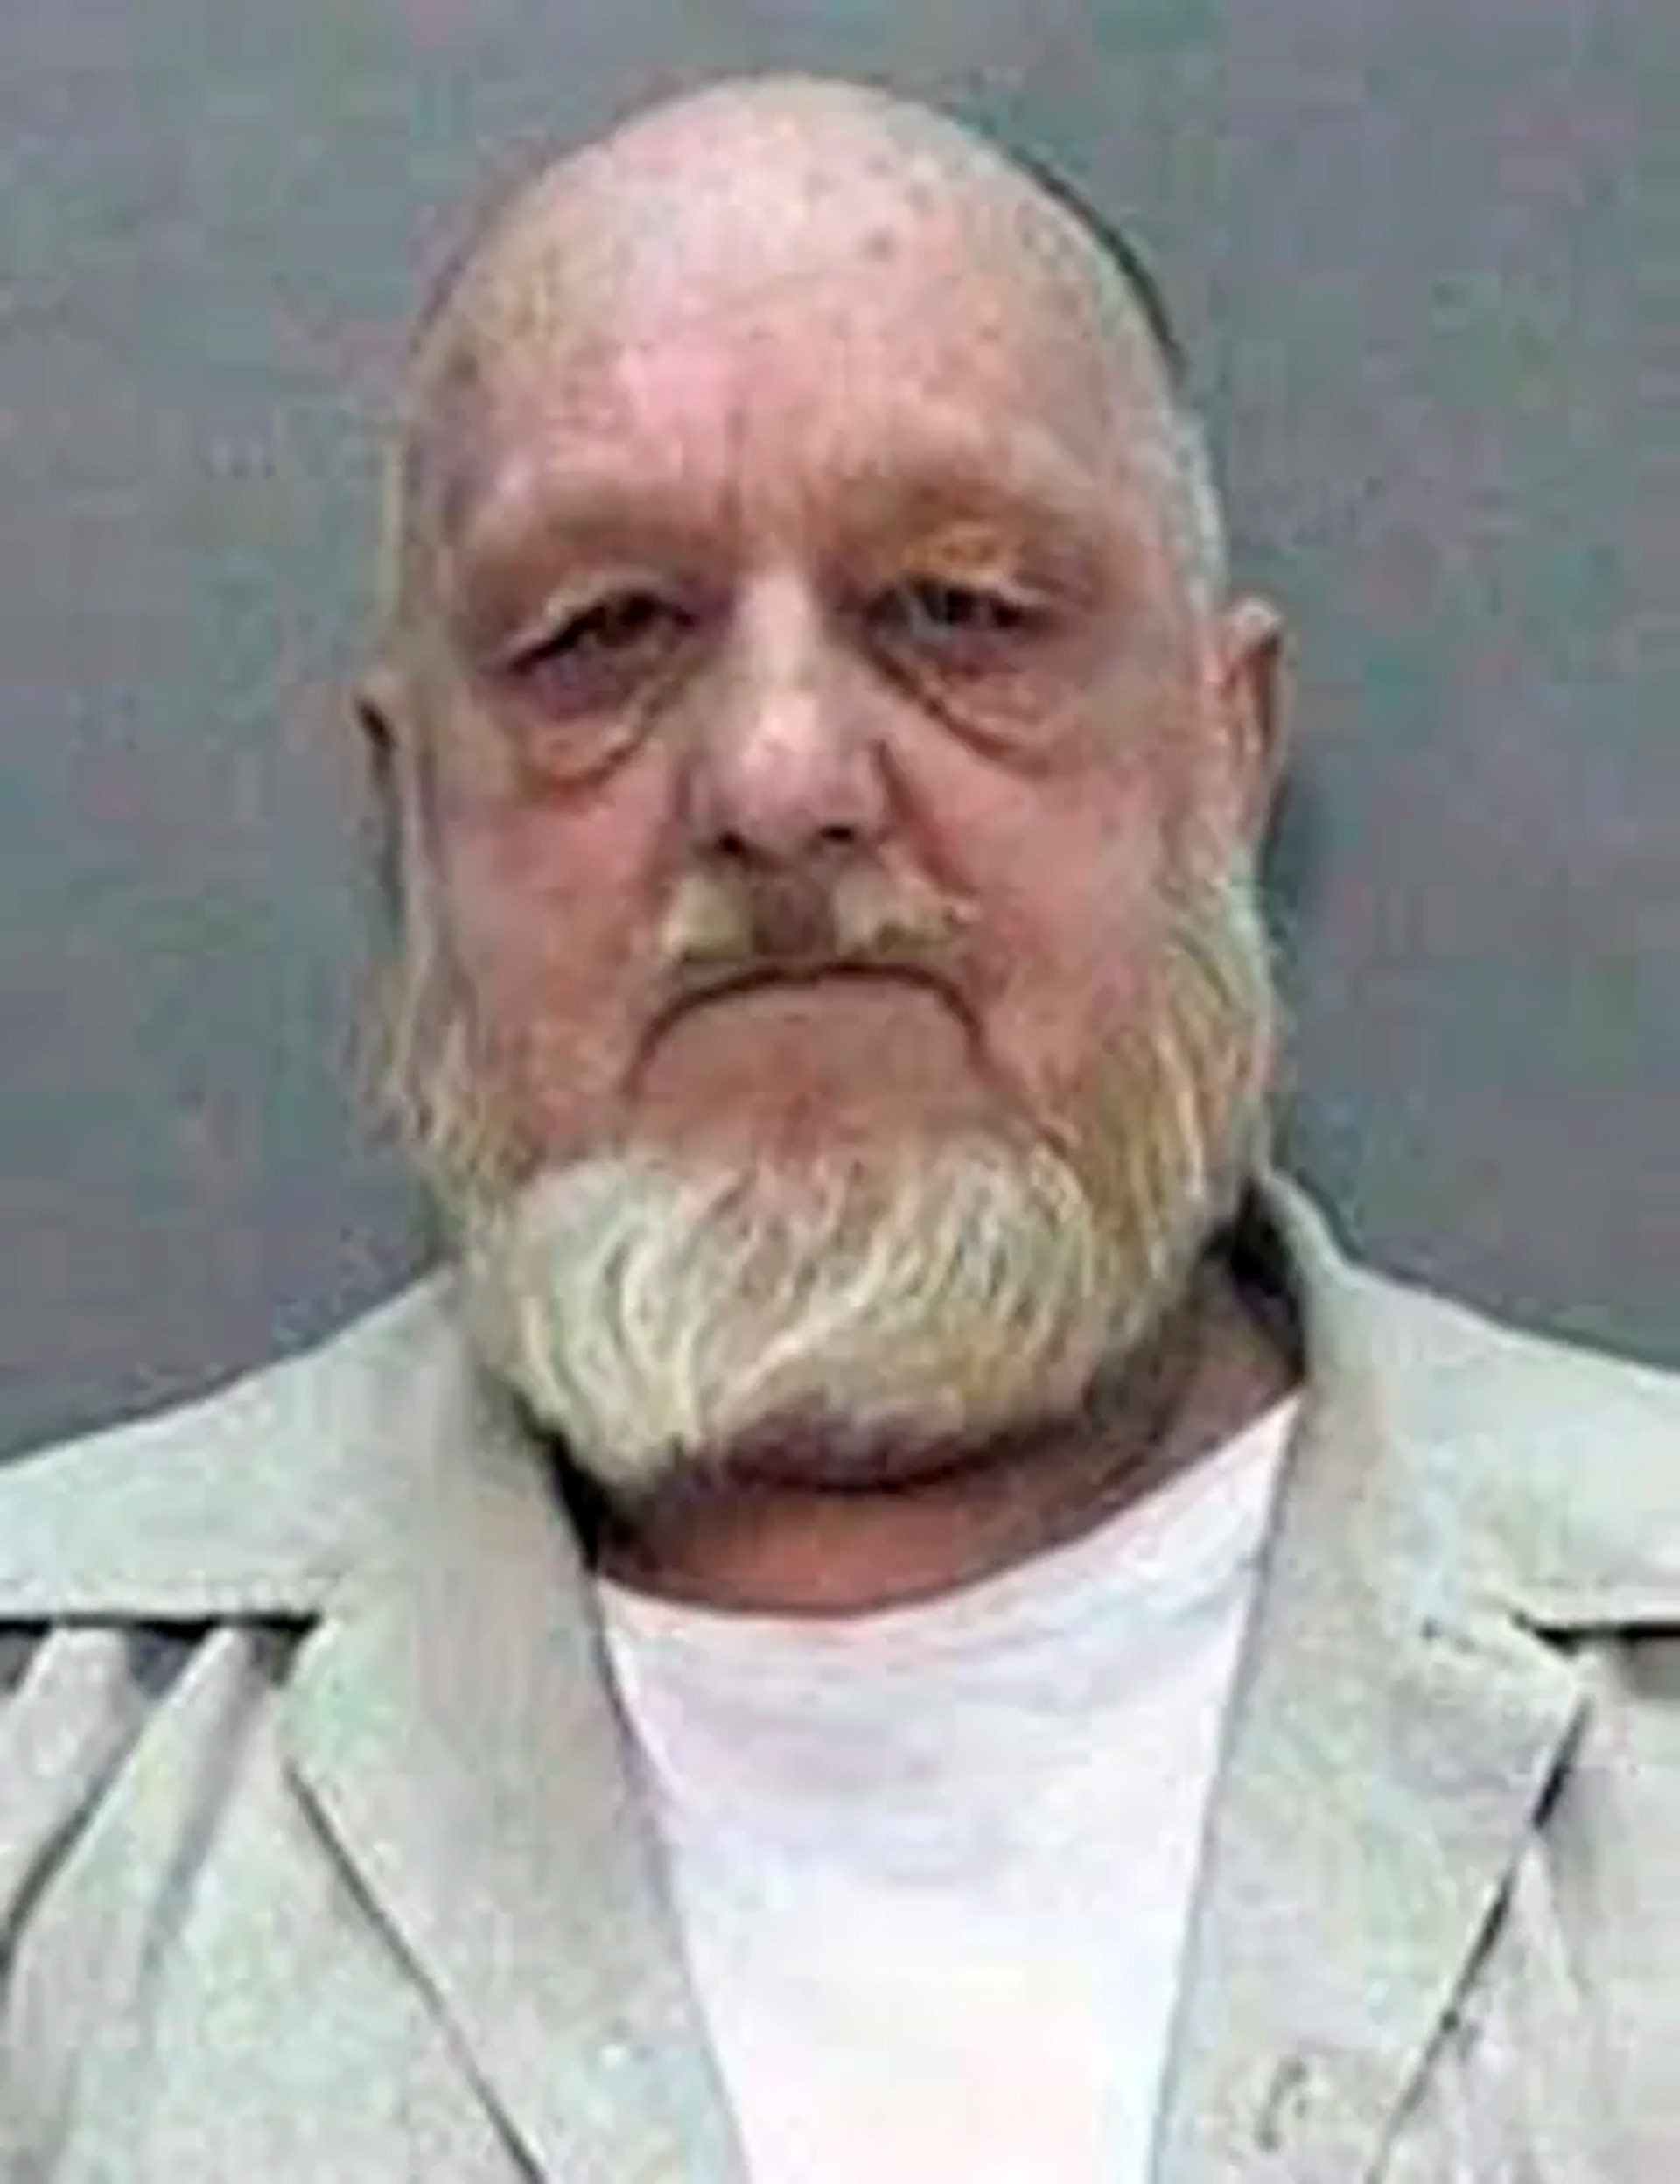 Una imagen de Metheny detenido en la cárcel